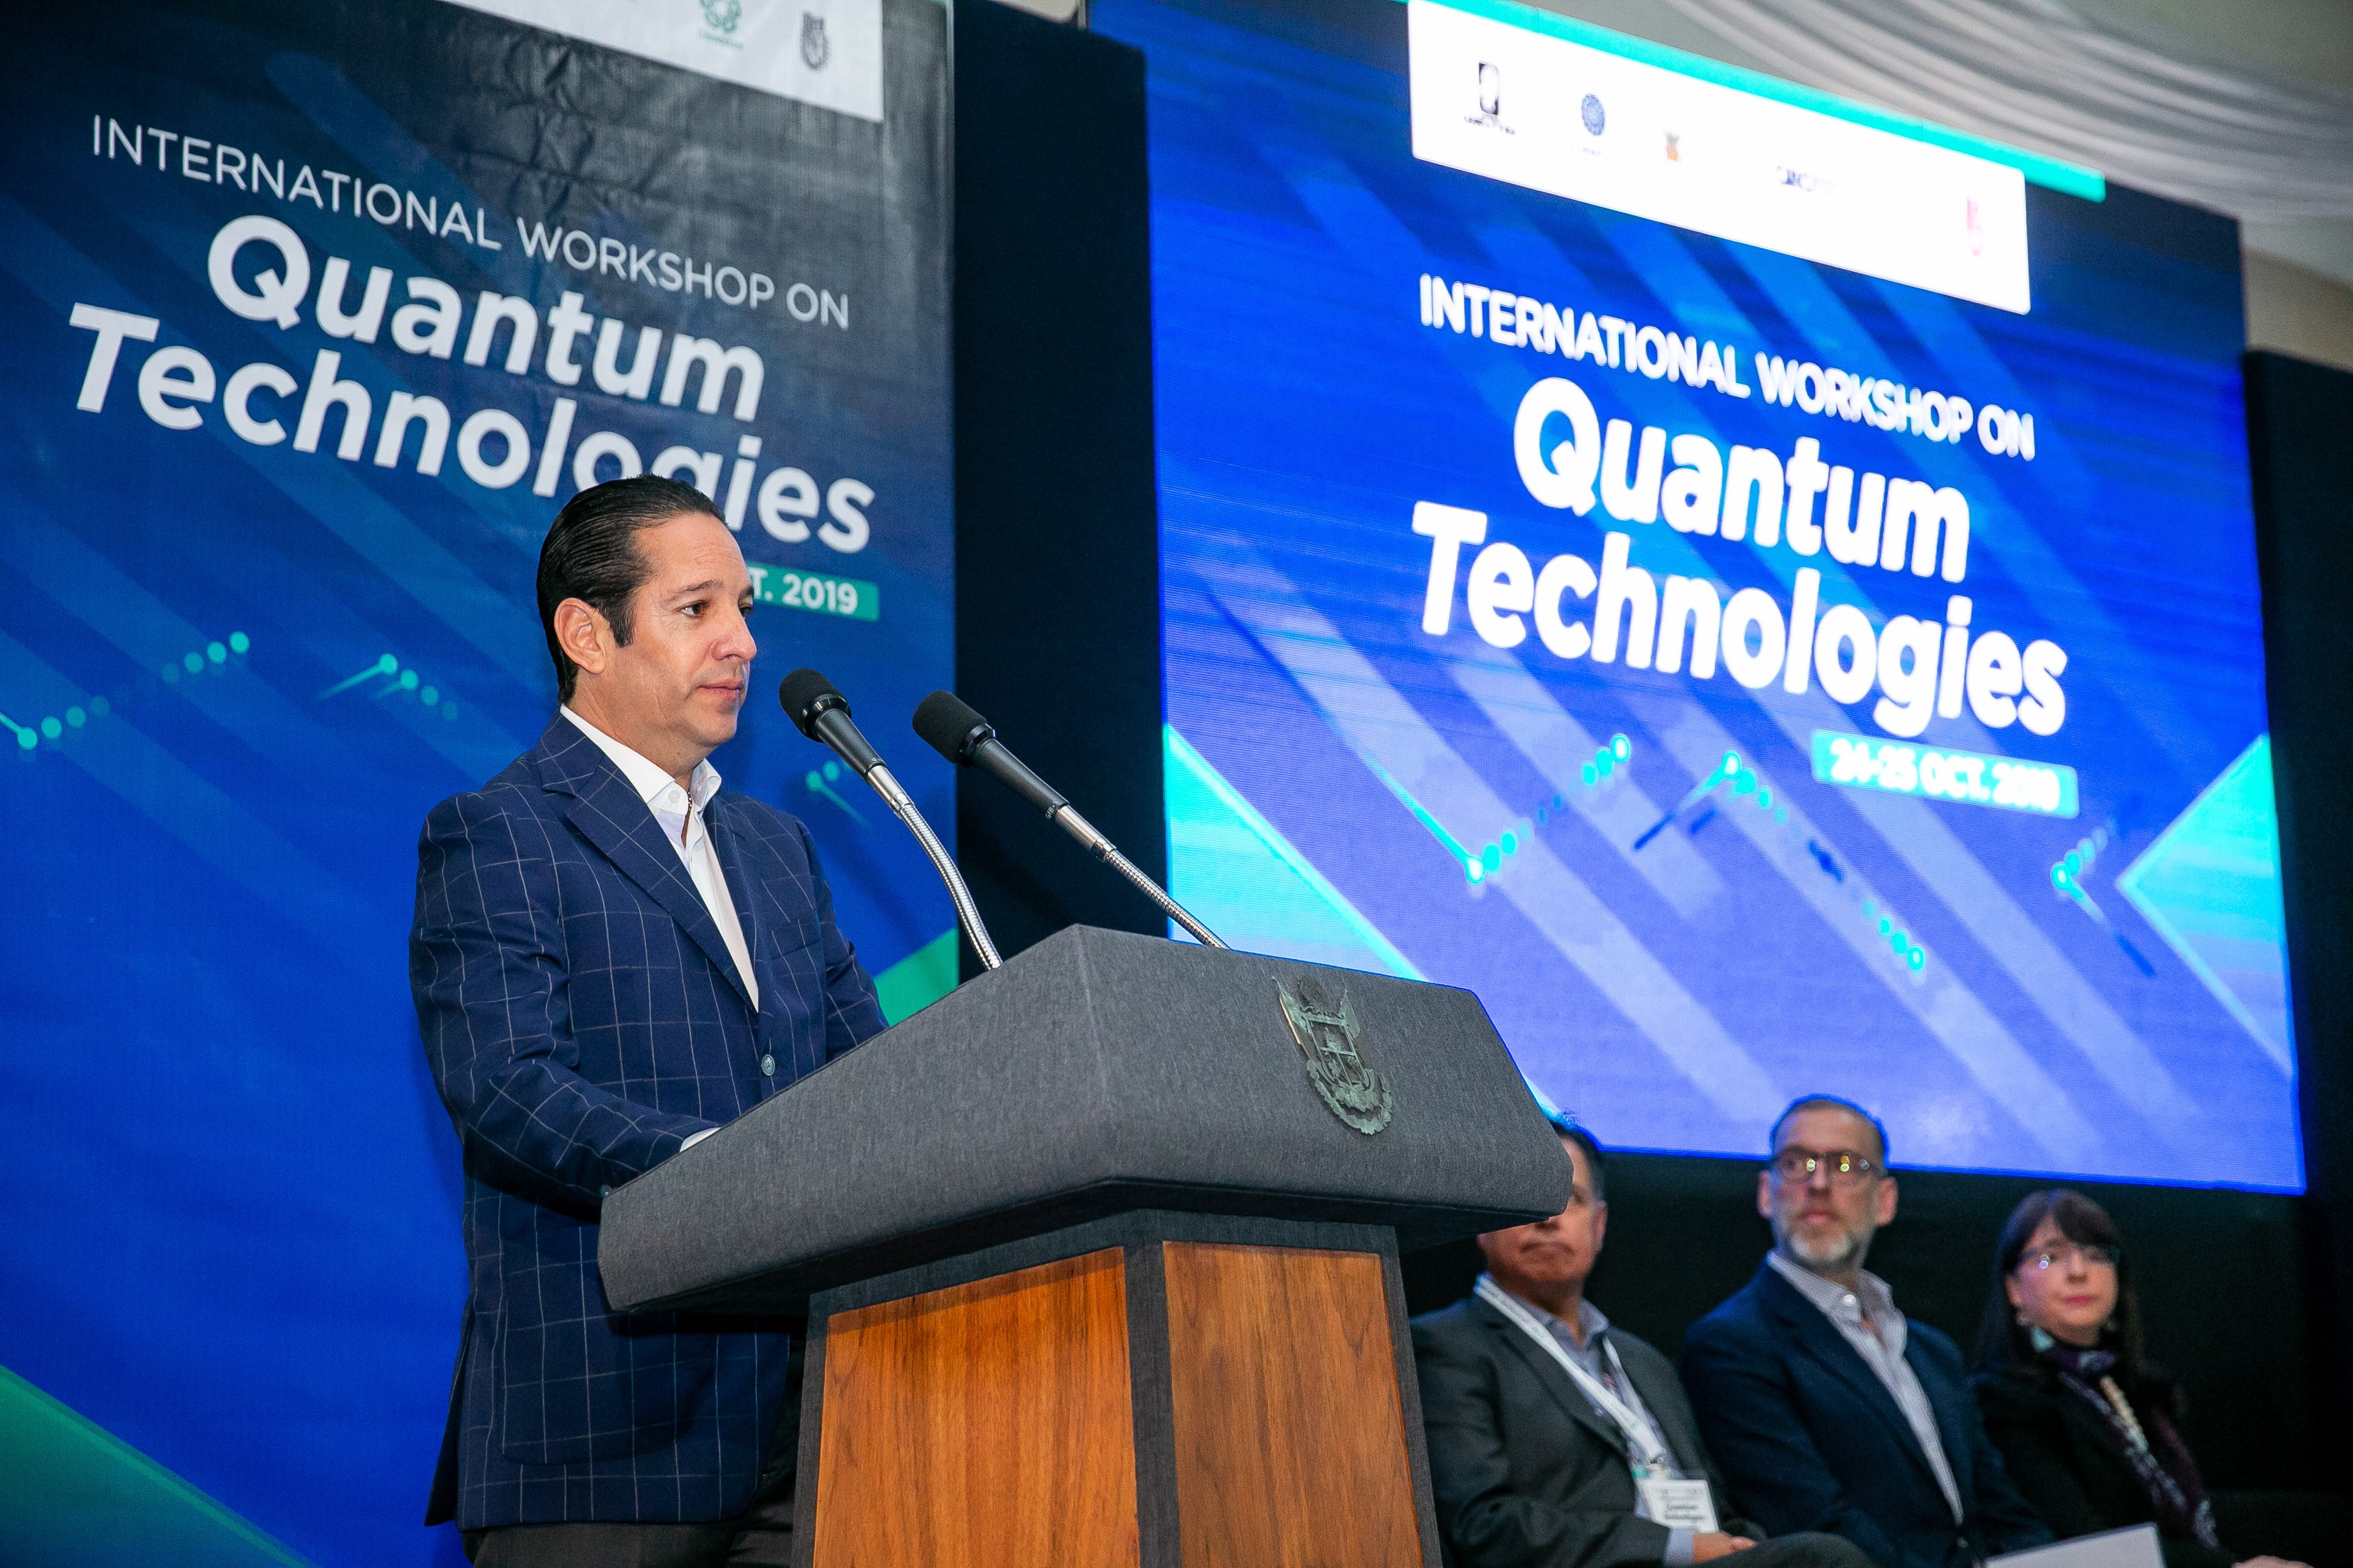 Gobernador de Querétaro inaugura el International Workshop on Quantum Technologies